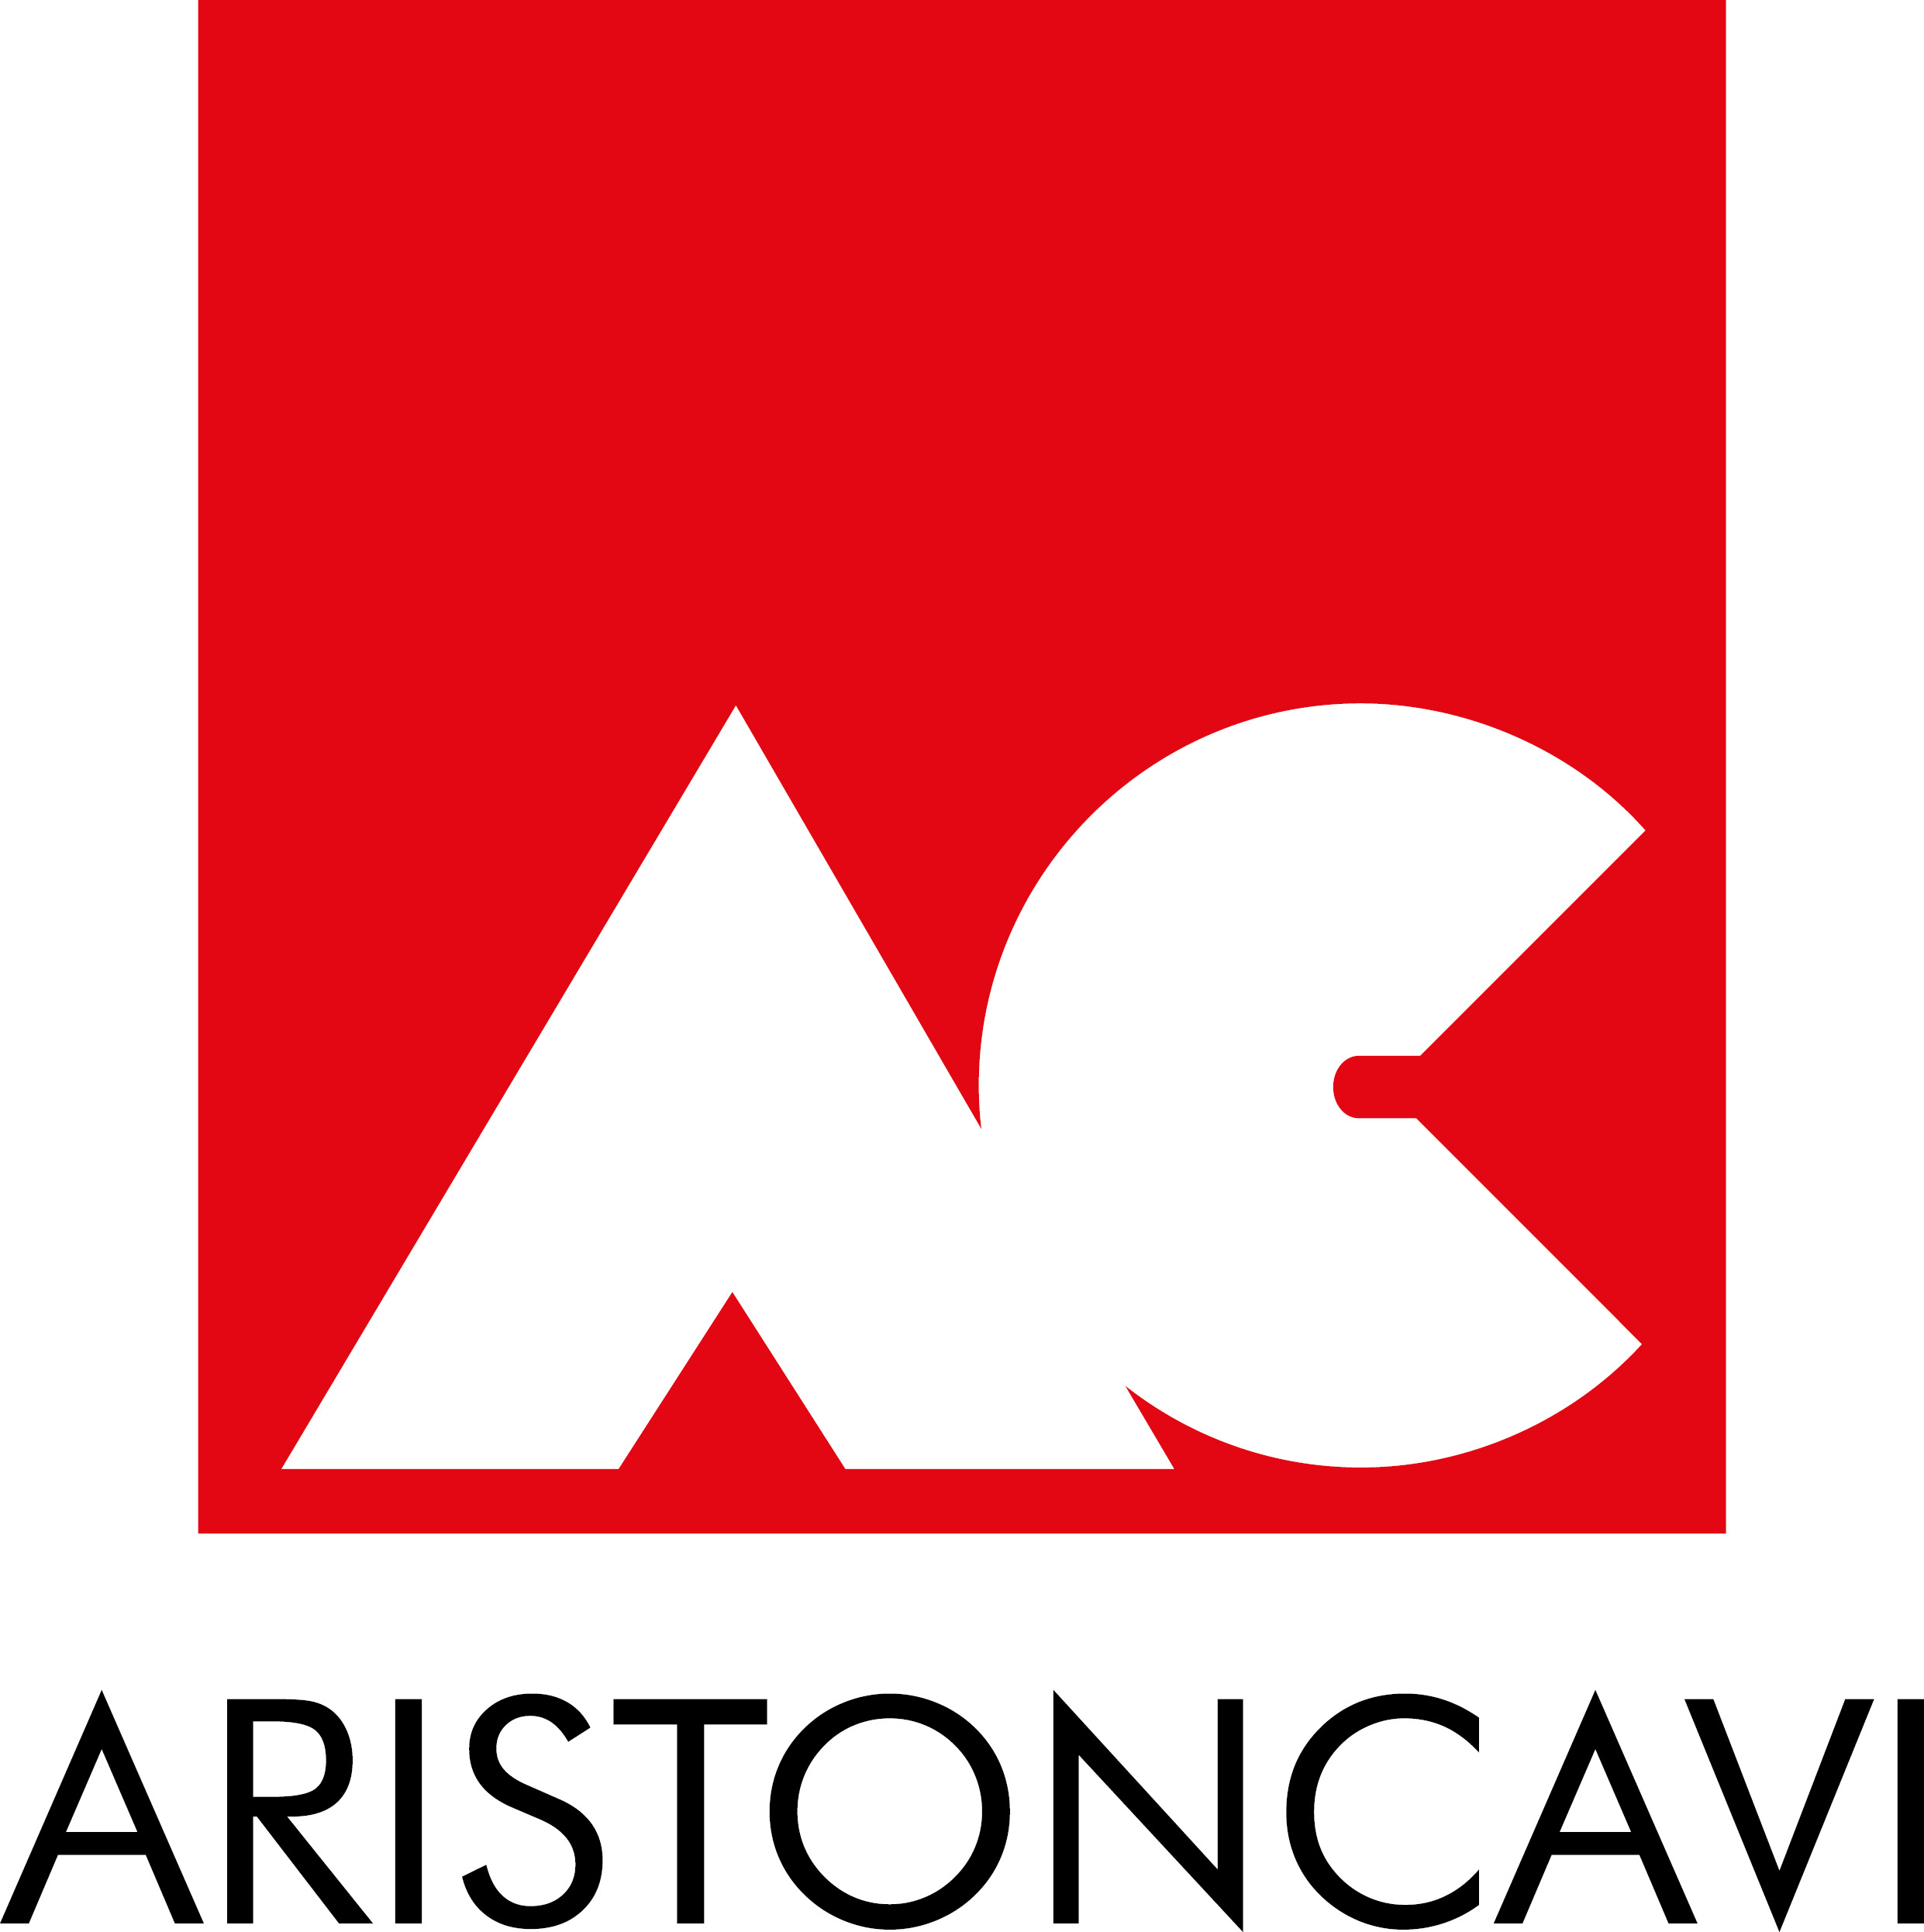 Aristoncavi Americas Inc.